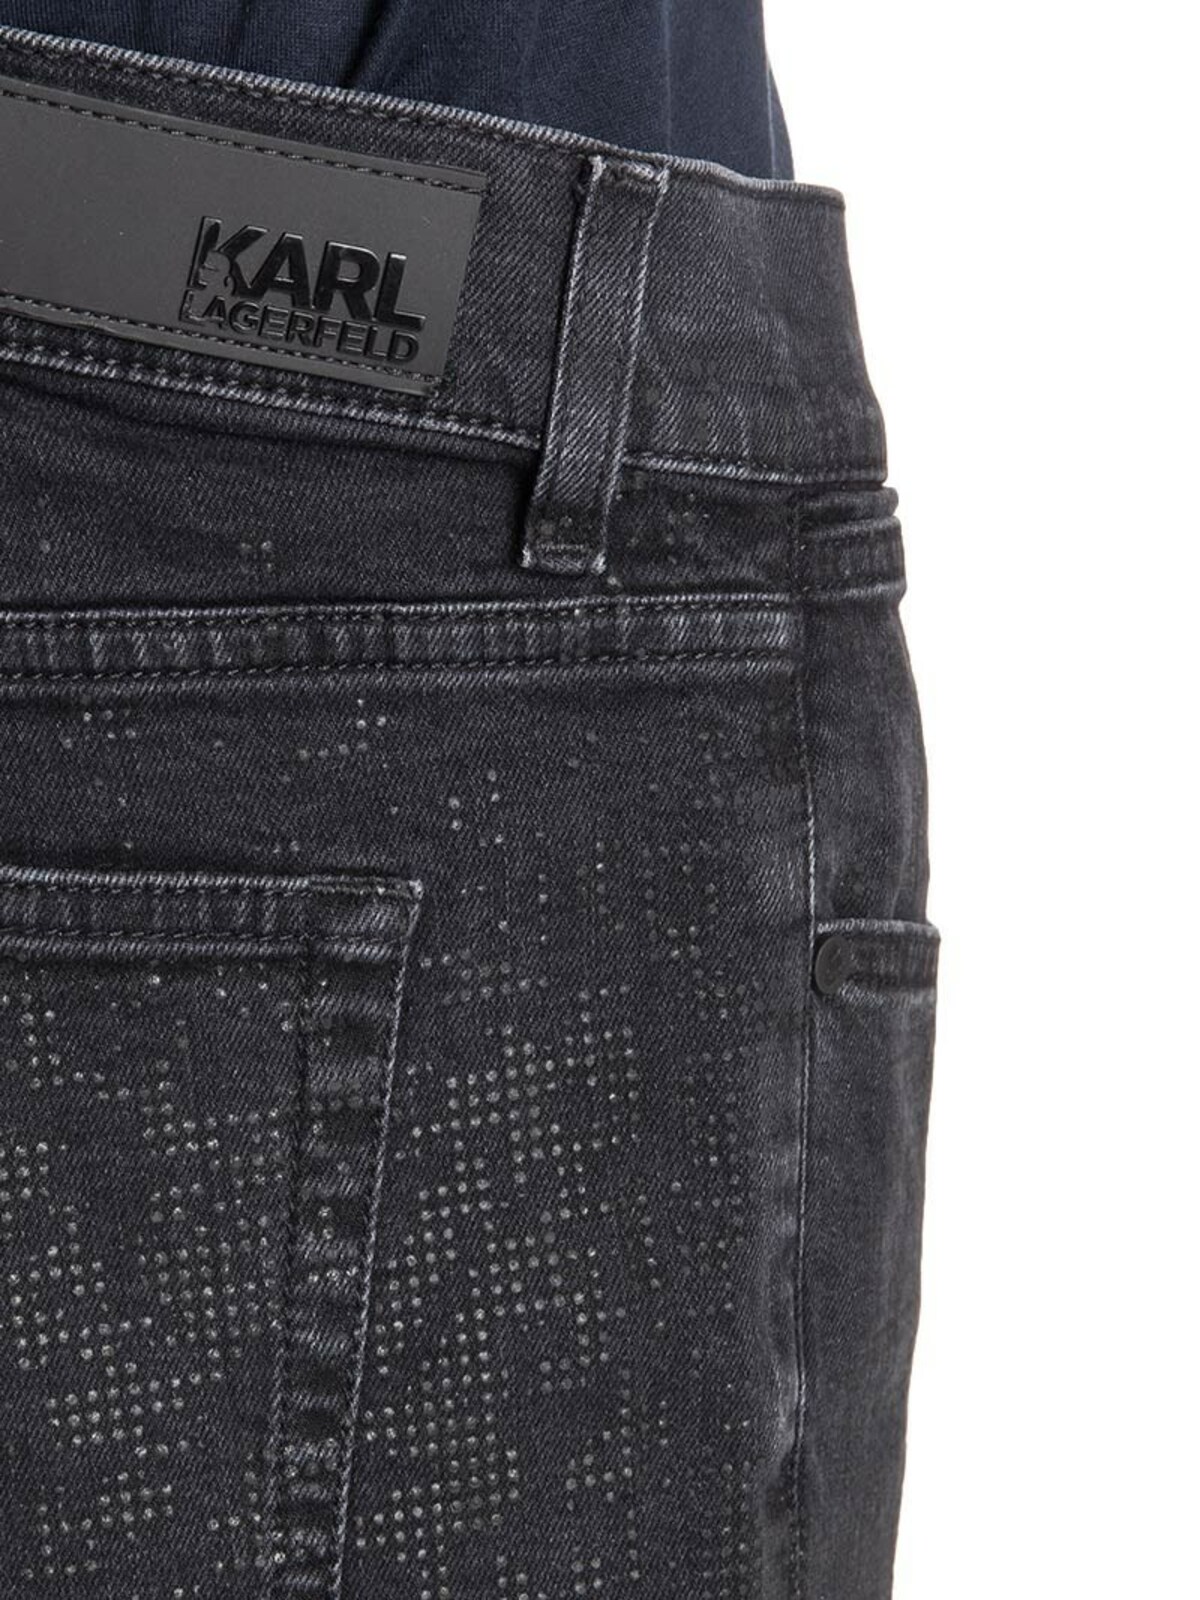 Authenticatie Transformator Betekenisvol Jeans Karl Lagerfeld - Jeans - 265801571860990 | Shop online at iKRIX